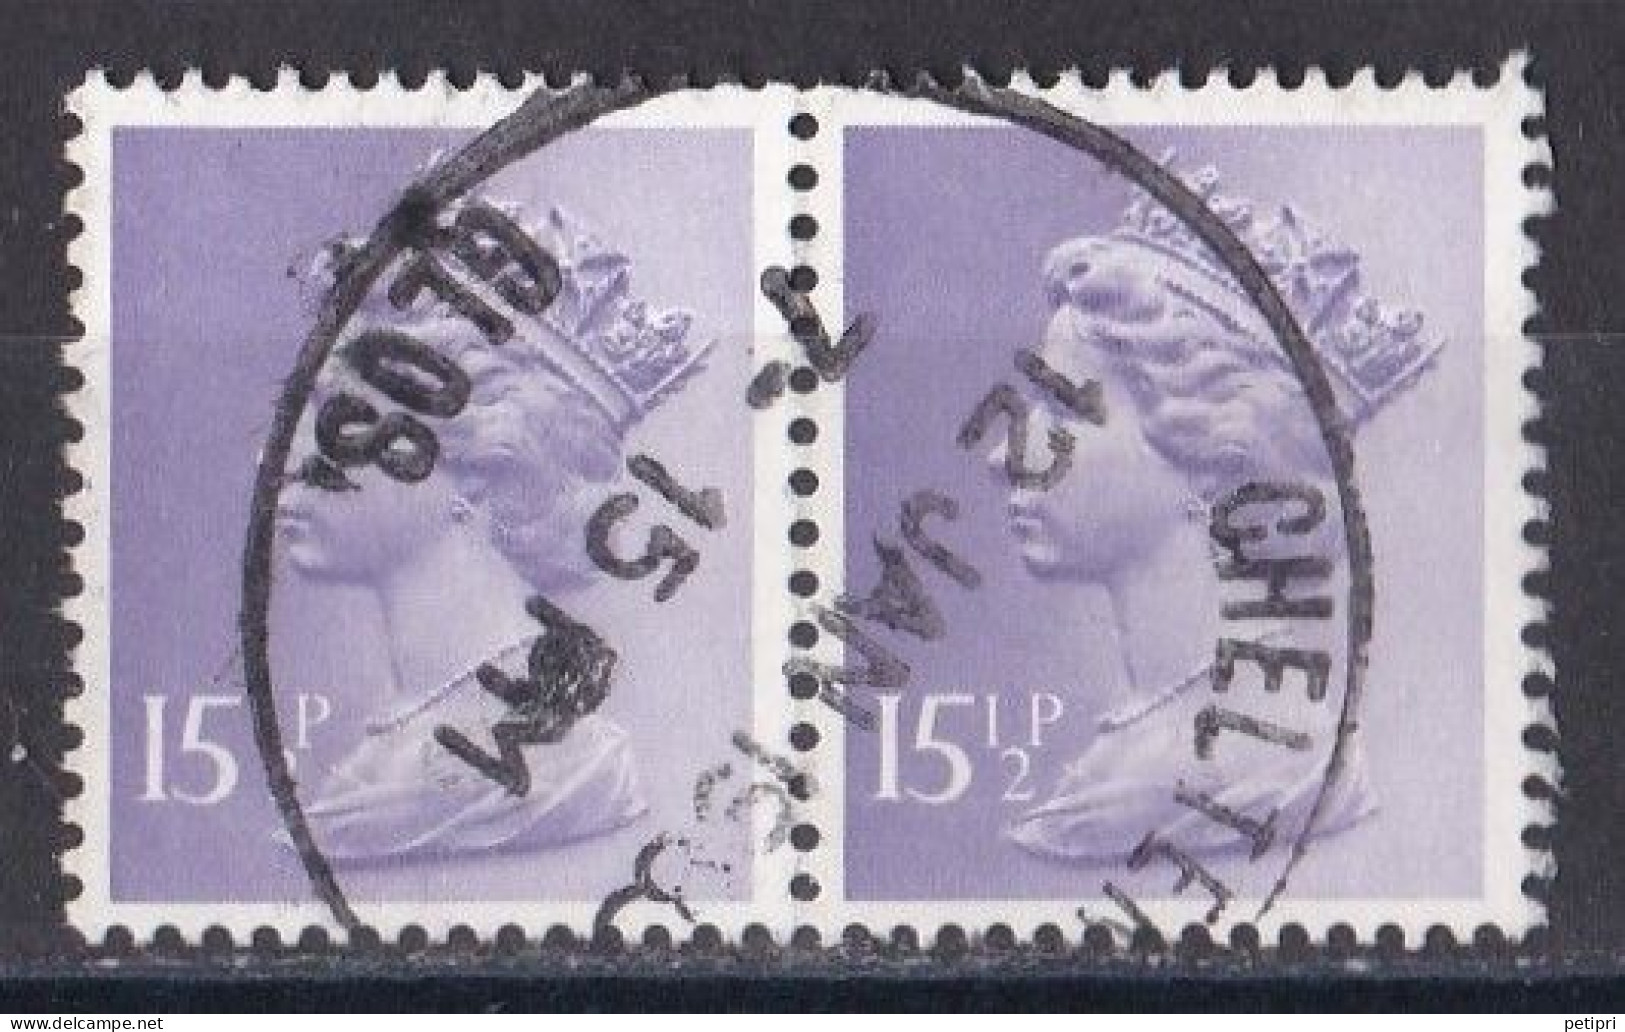 Grande Bretagne - 1971 - 1980 -  Elisabeth II -  Y&T N °  968  Paire  Oblitérée - Gebraucht